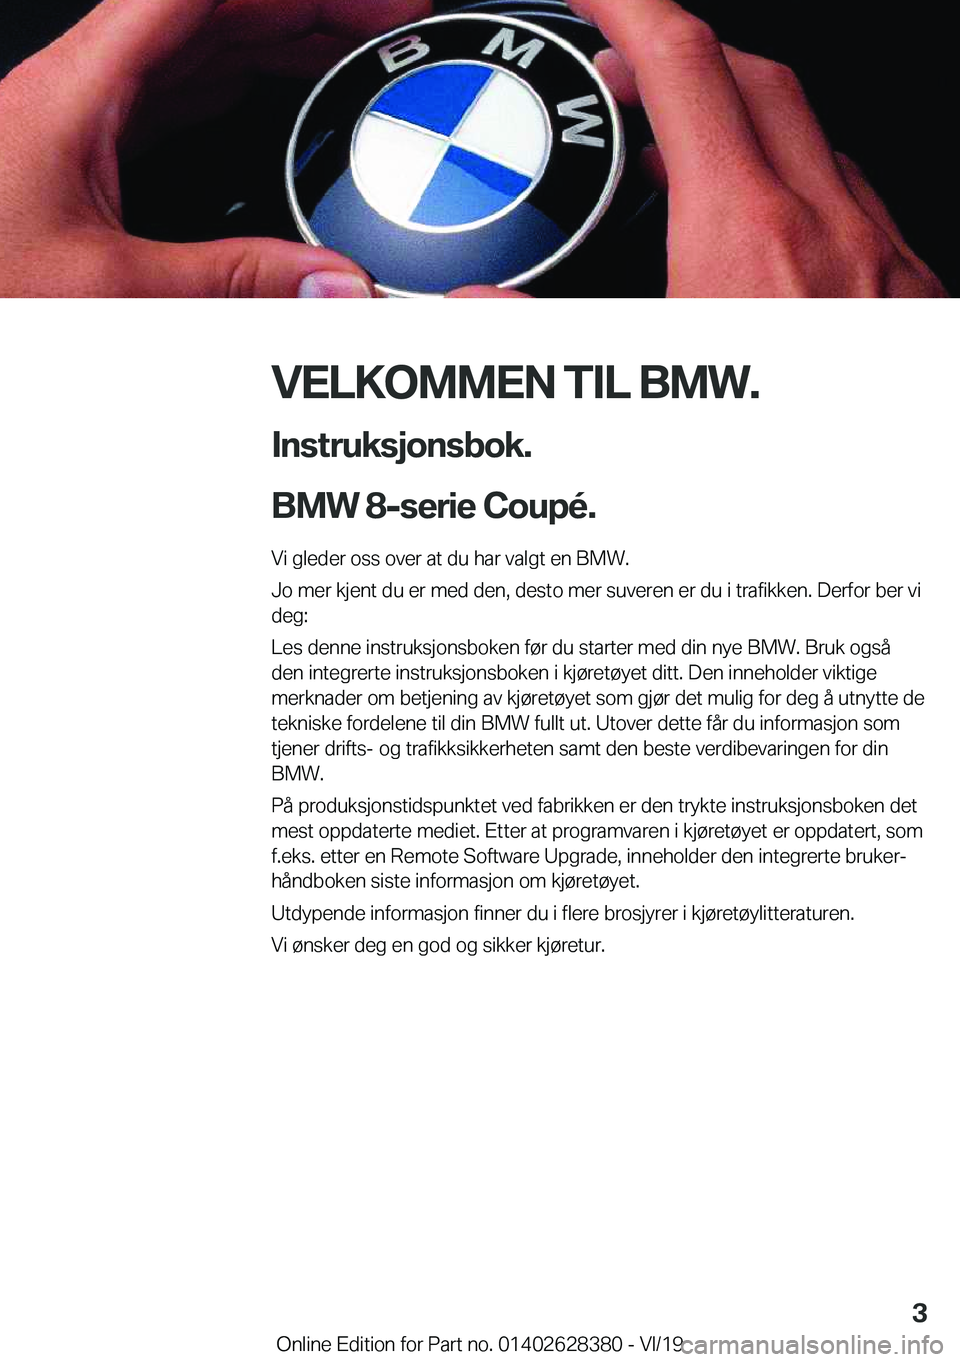 BMW 8 SERIES COUPE 2020  InstruksjonsbØker (in Norwegian) �V�E�L�K�O�M�M�E�N��T�I�L��B�M�W�.�I�n�s�t�r�u�k�s�j�o�n�s�b�o�k�.
�B�M�W��8�-�s�e�r�i�e��C�o�u�p�